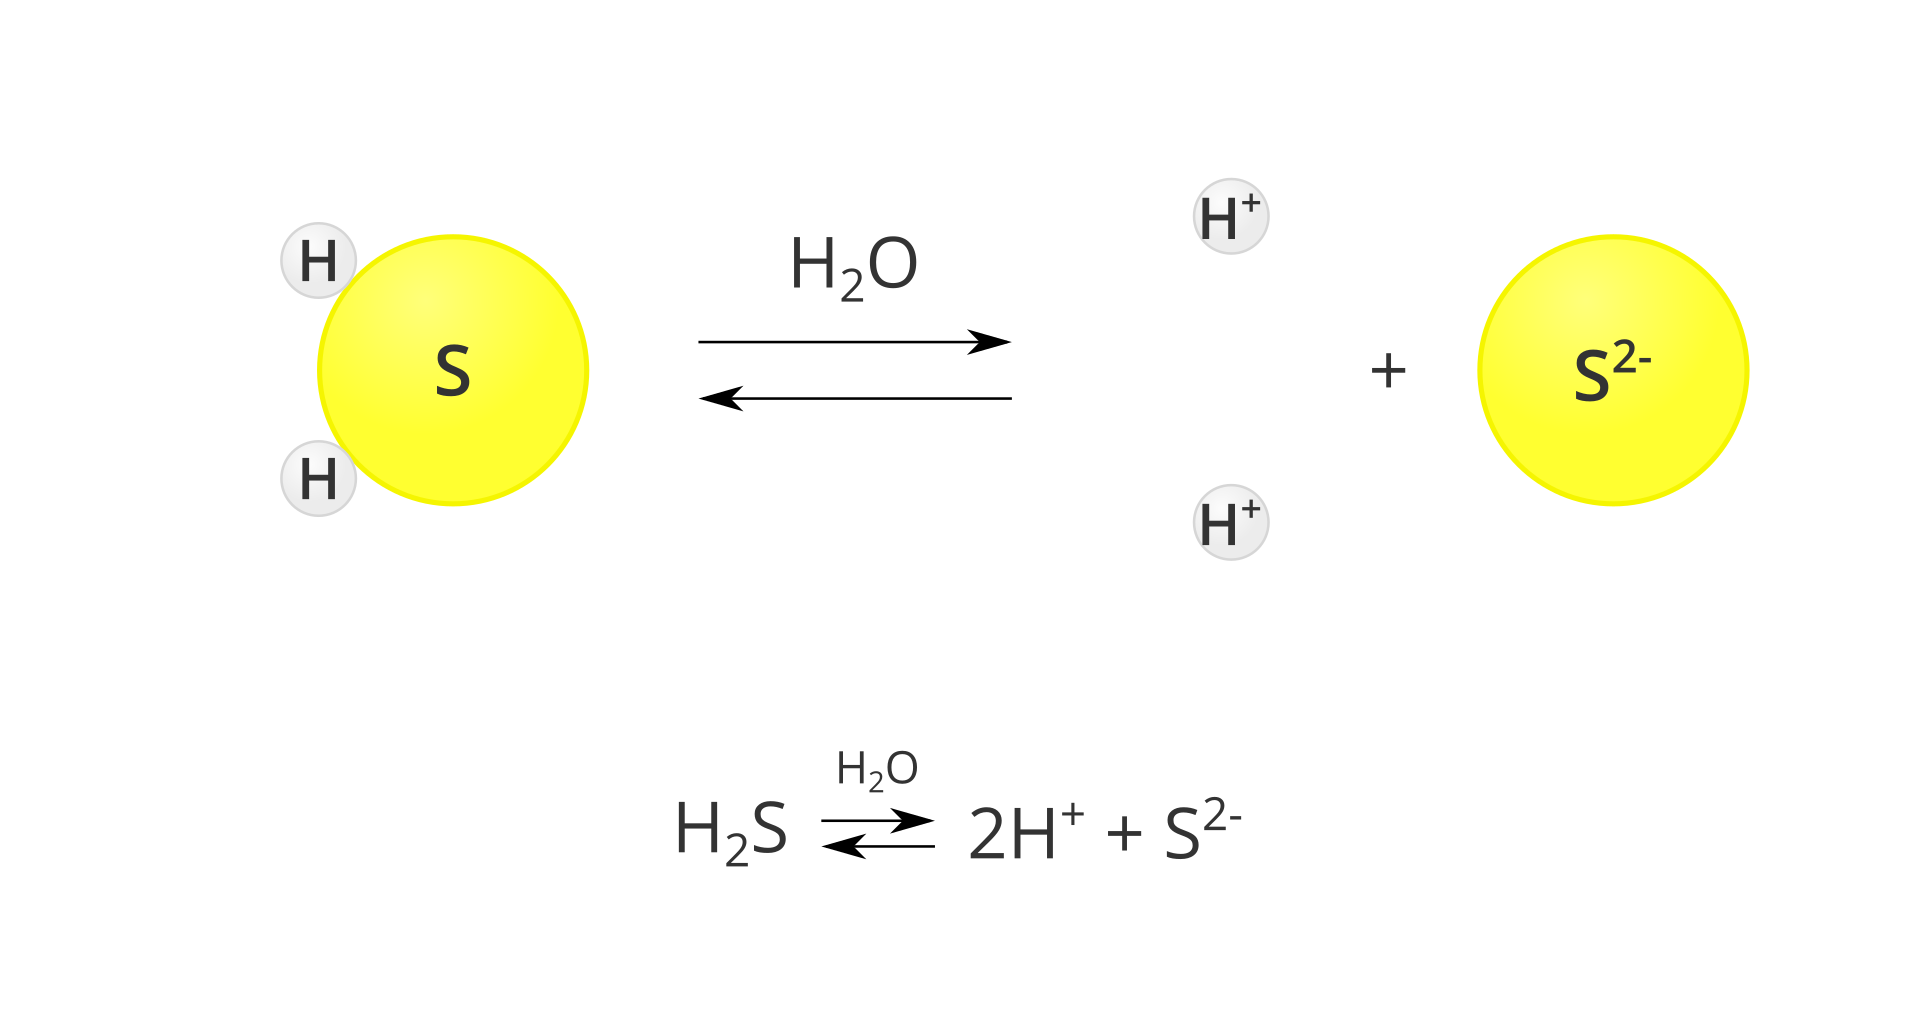 Modelowy schemat dysocjacji kwasu siarkowodorowego. Po lewej stronie planszy znajduje się model cząsteczki siarkowodoru, zbudowany z dużego żółtego koła oznaczonego listerą S i przylegających do niego dwóch małych szarych kół oznaczonych literą H. Pośrodku planszy znajduje się znak reakcji przebiegającej w obie strony, mający postać dwóch równolegle ułożonych strzałek, z których górna skierowana jest w prawo, a dolna w lewo. Nad strzałkami znajduje się wzór H2O. Po prawej stronie znajduje się zapis rozpadu na jony: dwie szare kulki oznaczone jako H plus, znak dodawania oraz jedna duża żółta kula oznaczona jako S2 minus. Pod schematem zapis tej samej reakcji w postaci sumarycznej: cząsteczka H2S w obecności wody przechodzi w dwa jony H plus oraz jon S2 minus.